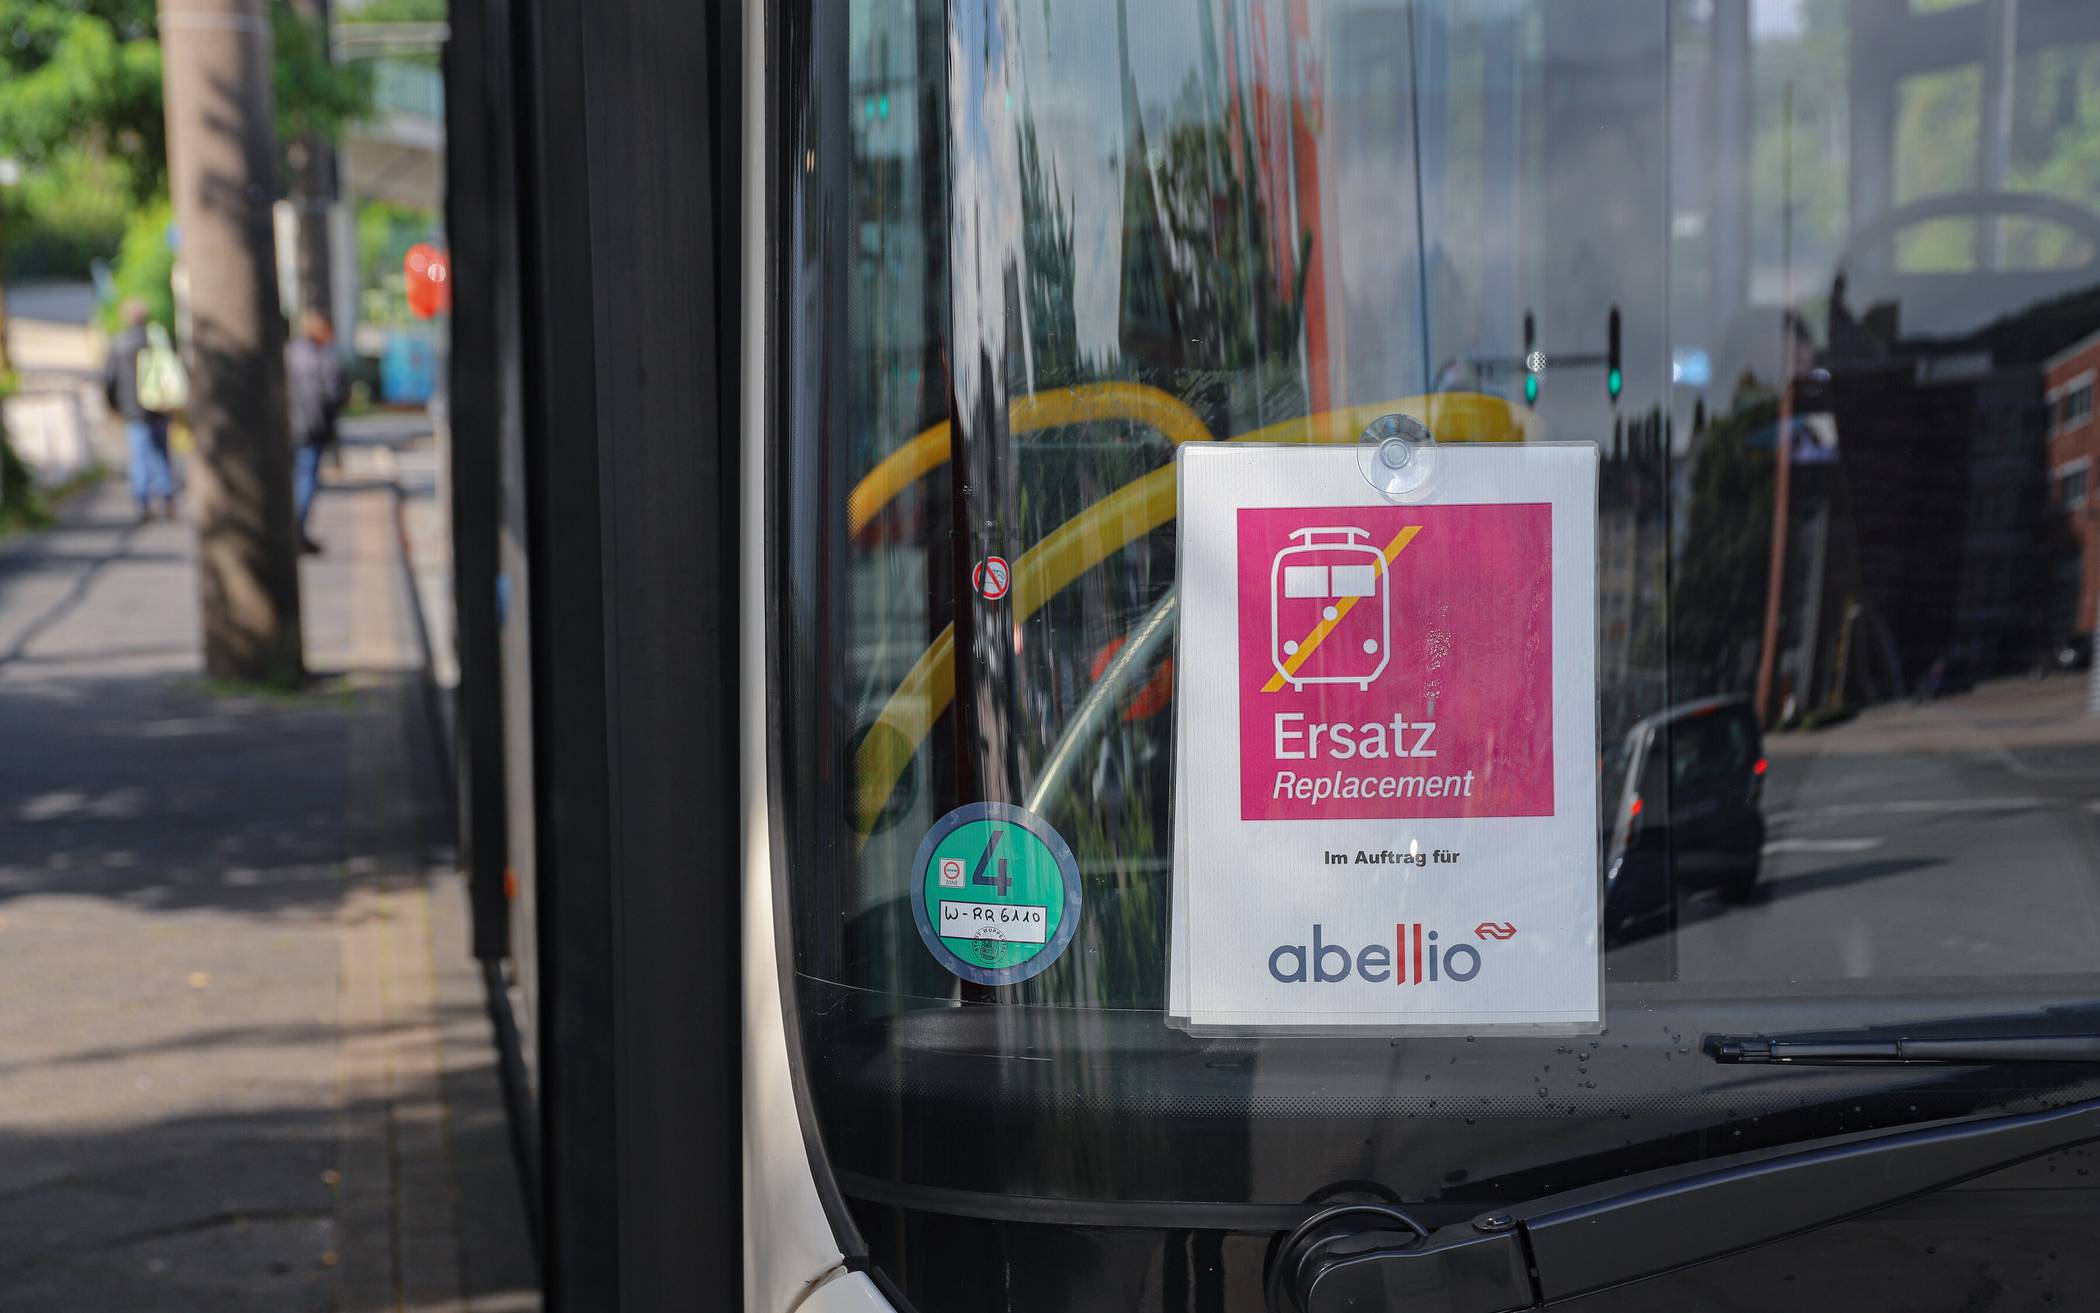  Der Abellio-Verkehr ruht, stattdessen fahren Busse. 